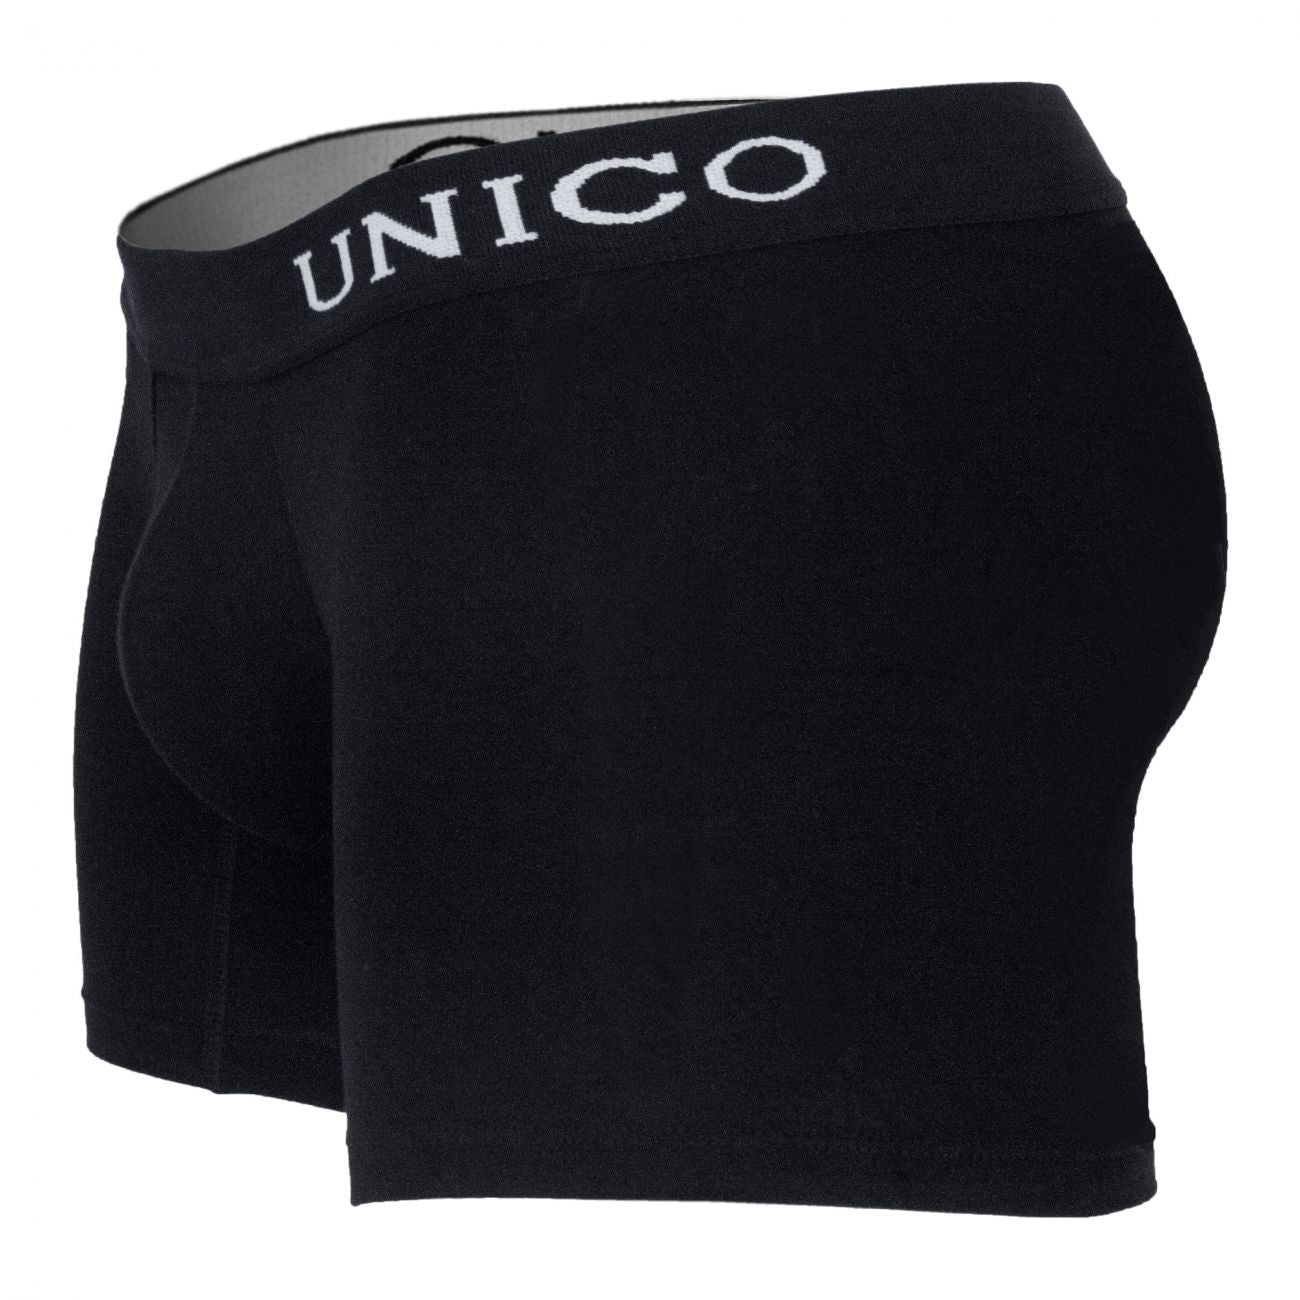 Unico 9610090199 Boxer Briefs Intenso Black